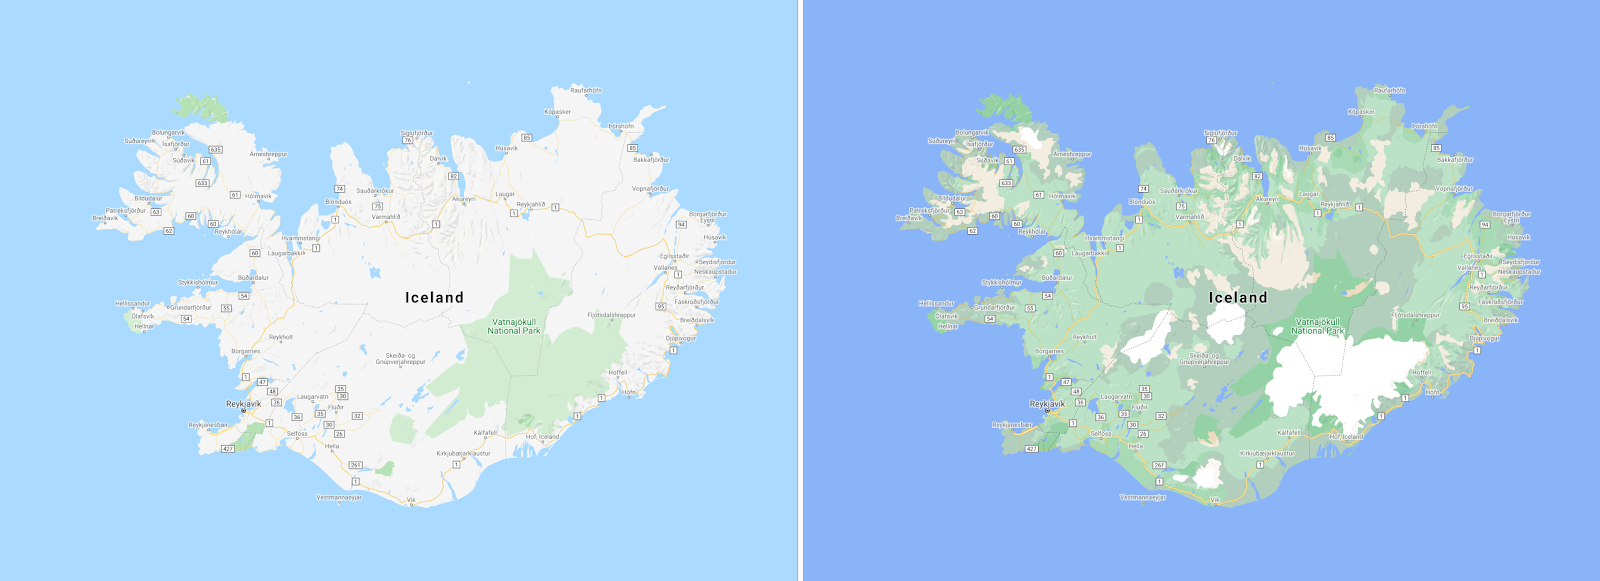 カラーマッピング技術を施したアイスランドの航空地図の画像。